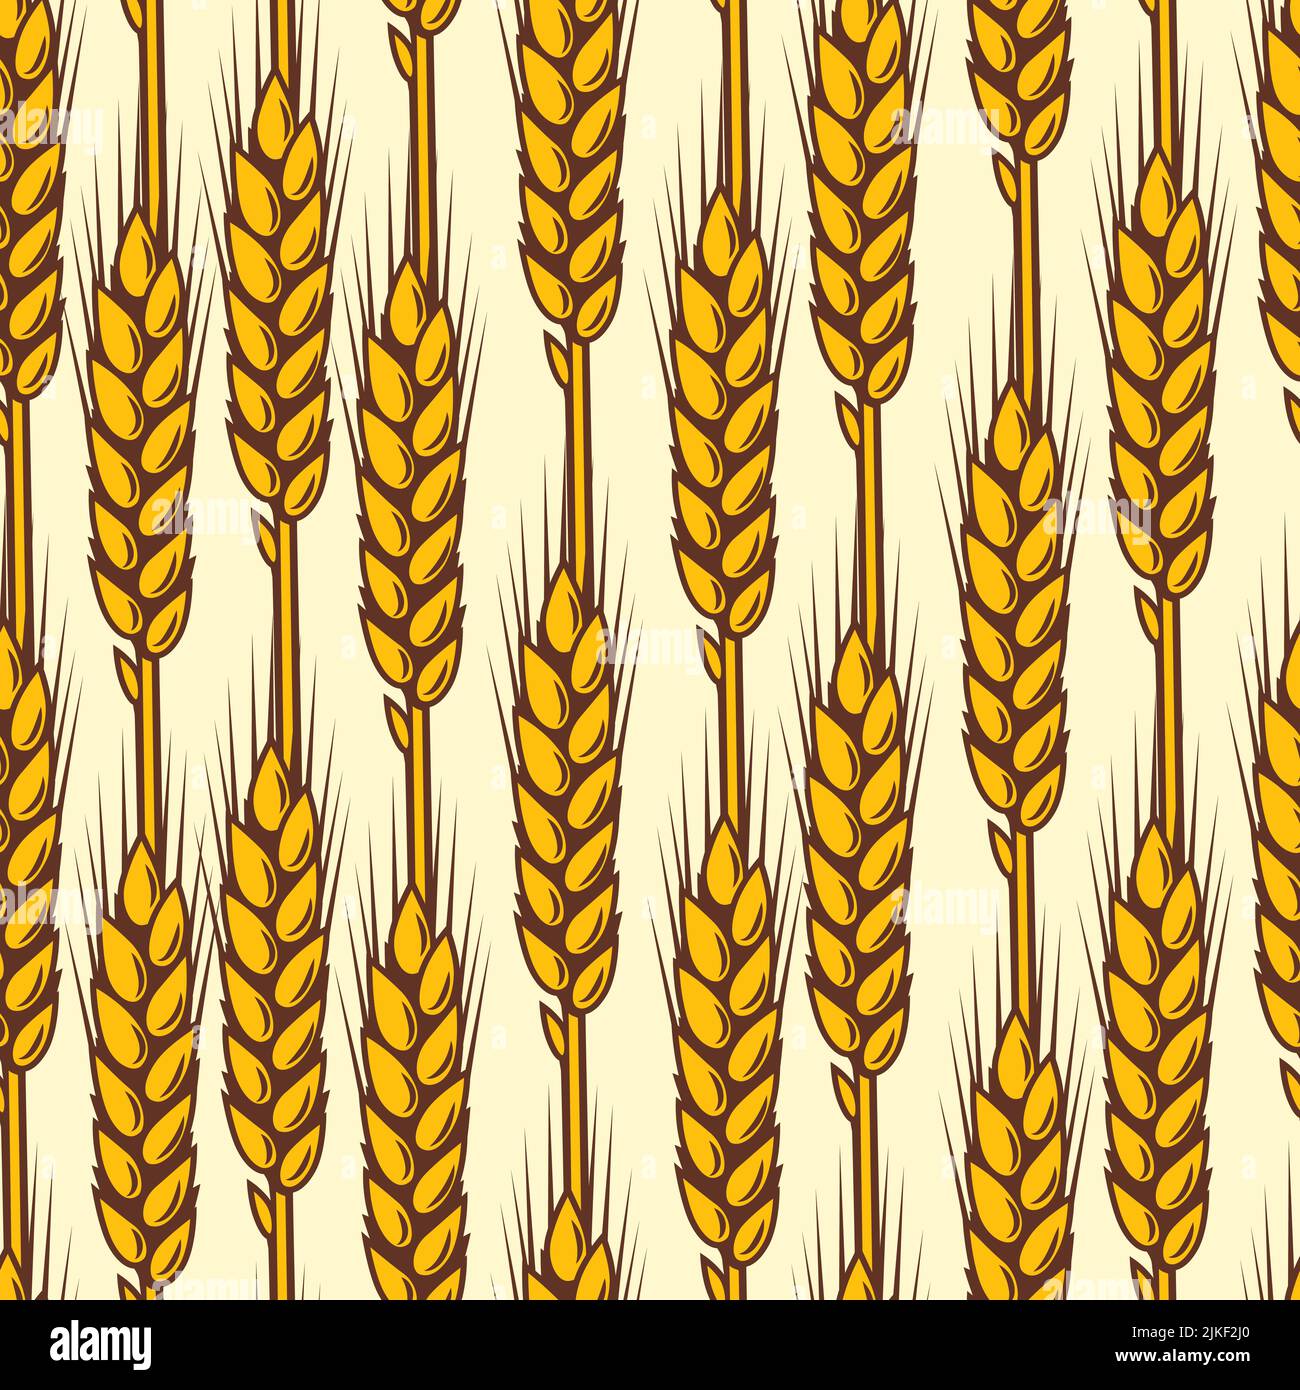 Motif sans couture avec blé. Image agricole avec des oreilles dorées naturelles d'orge ou de seigle. Illustration de Vecteur